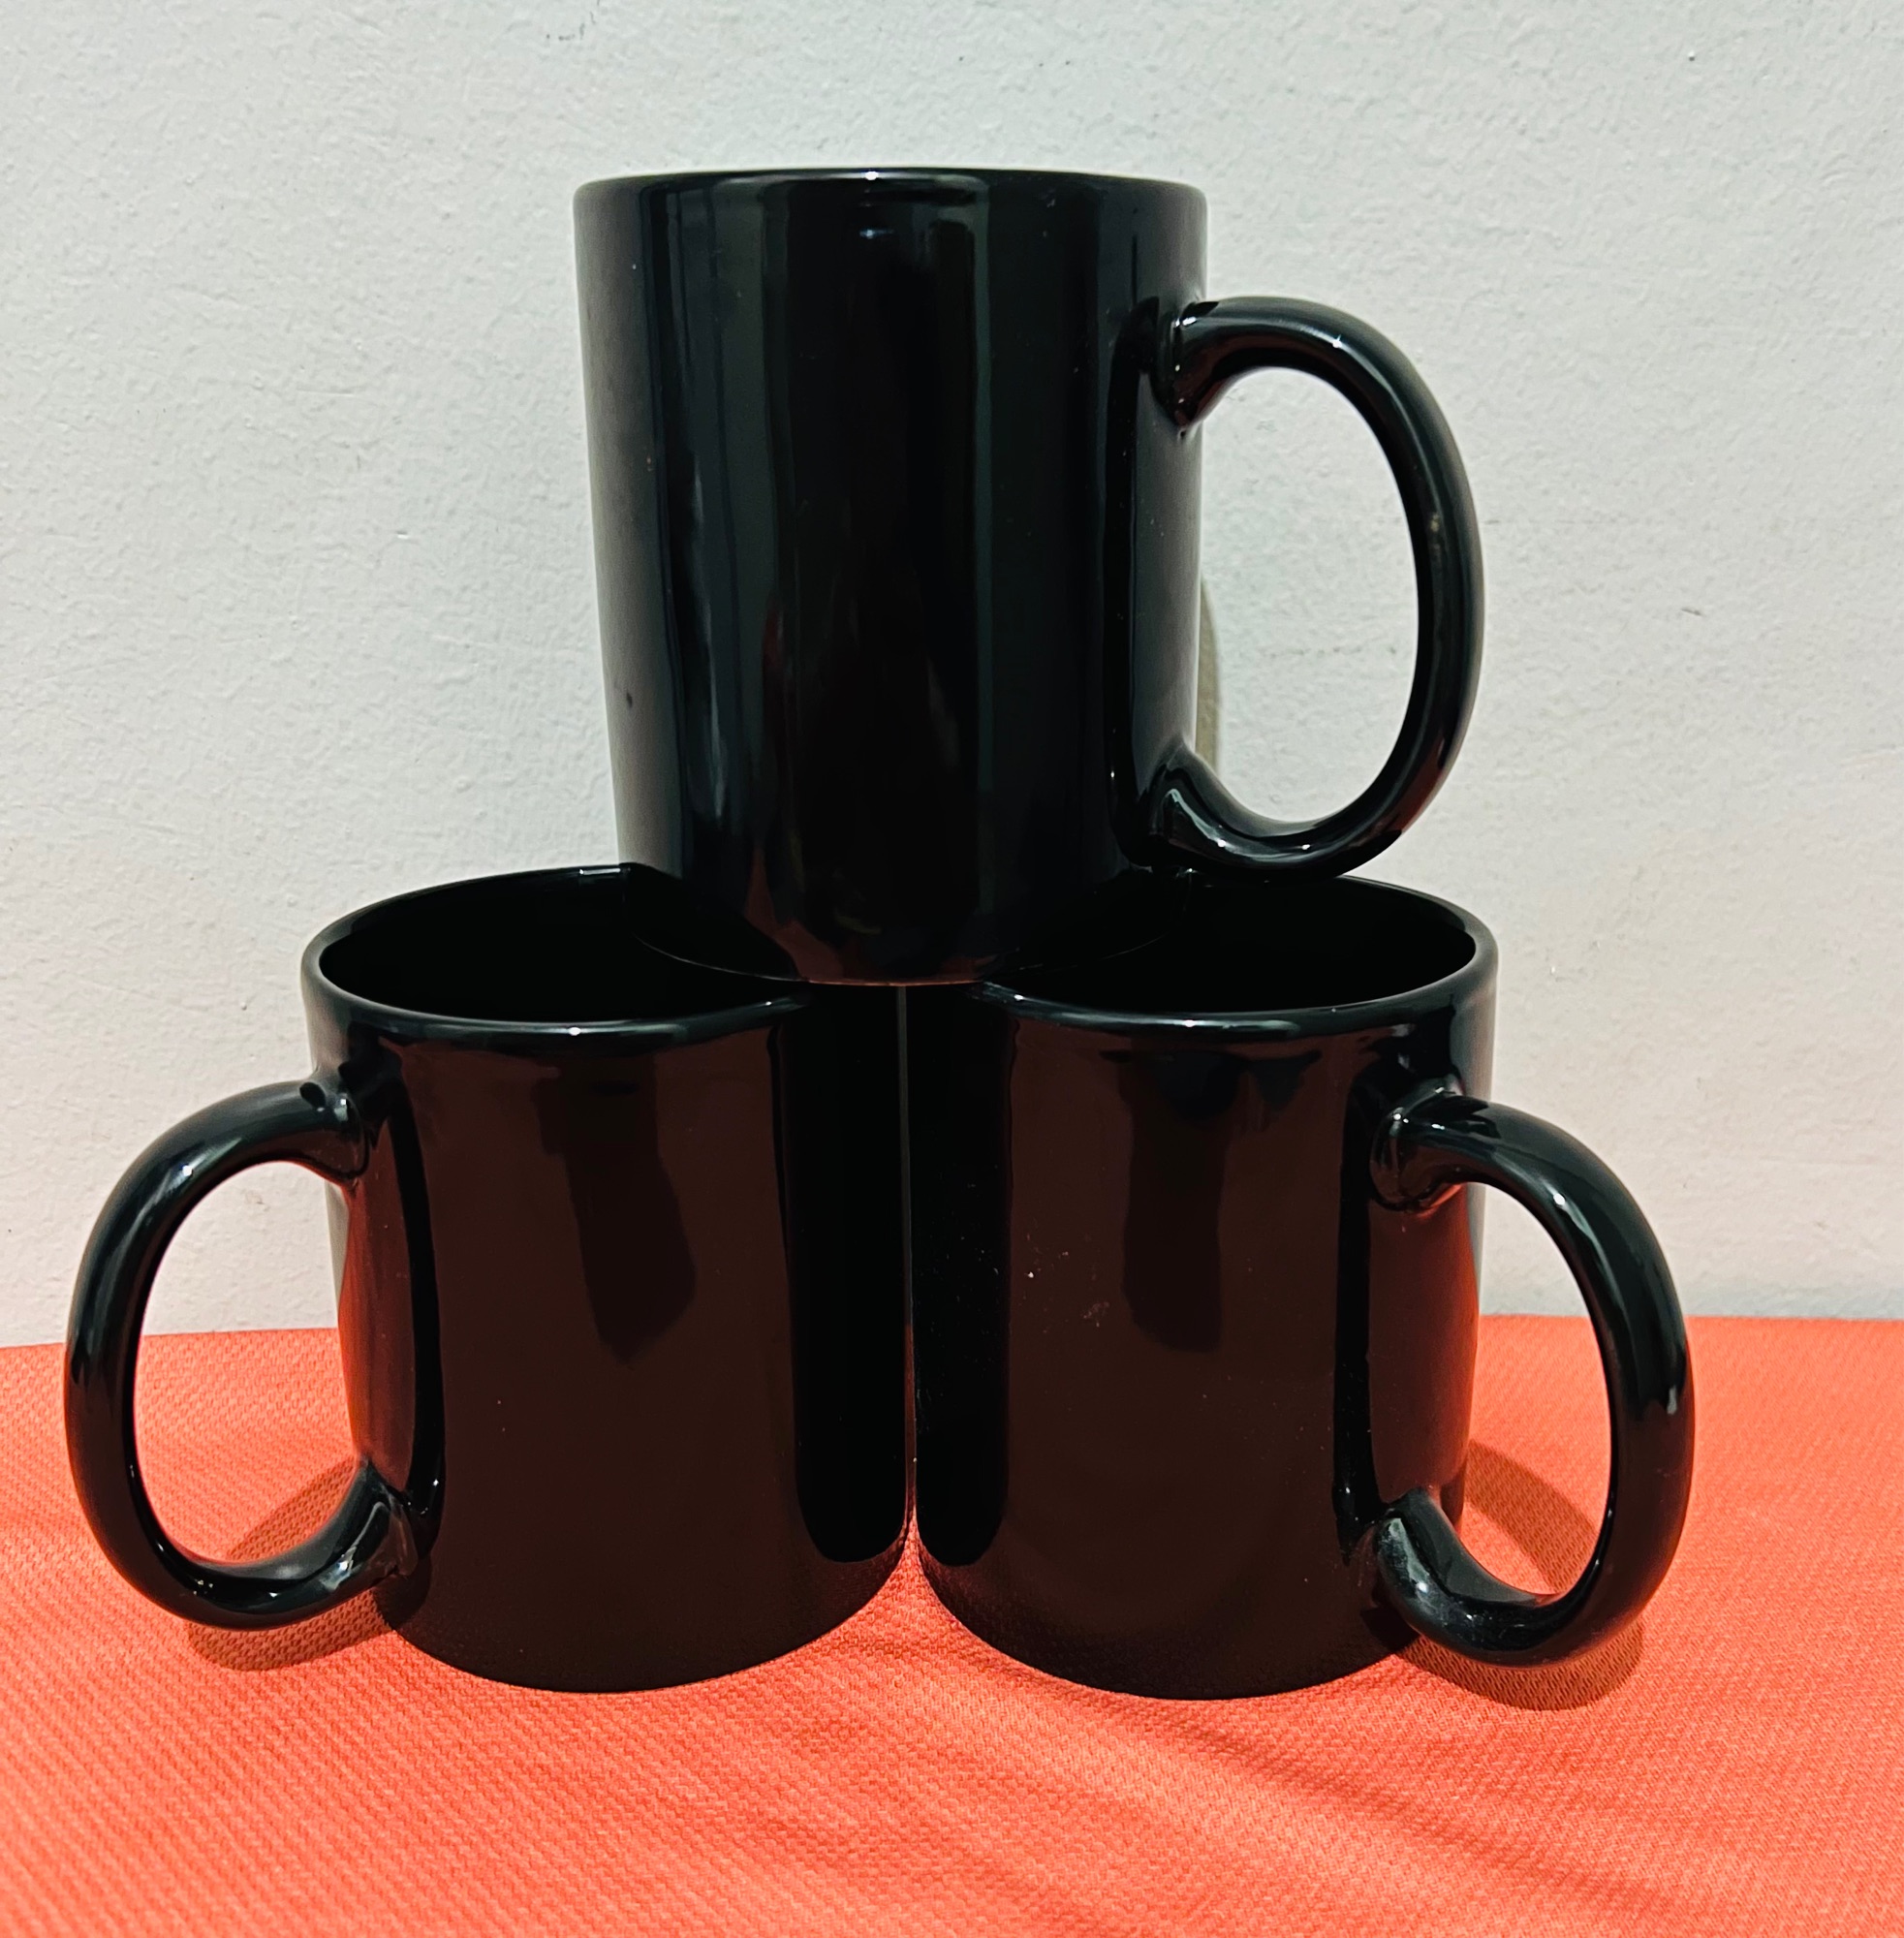 1.2 Liters Big Mug Oversized Mug Giant Mug 350ml-1200ml Cup Gift Ideas  Coffee Mug